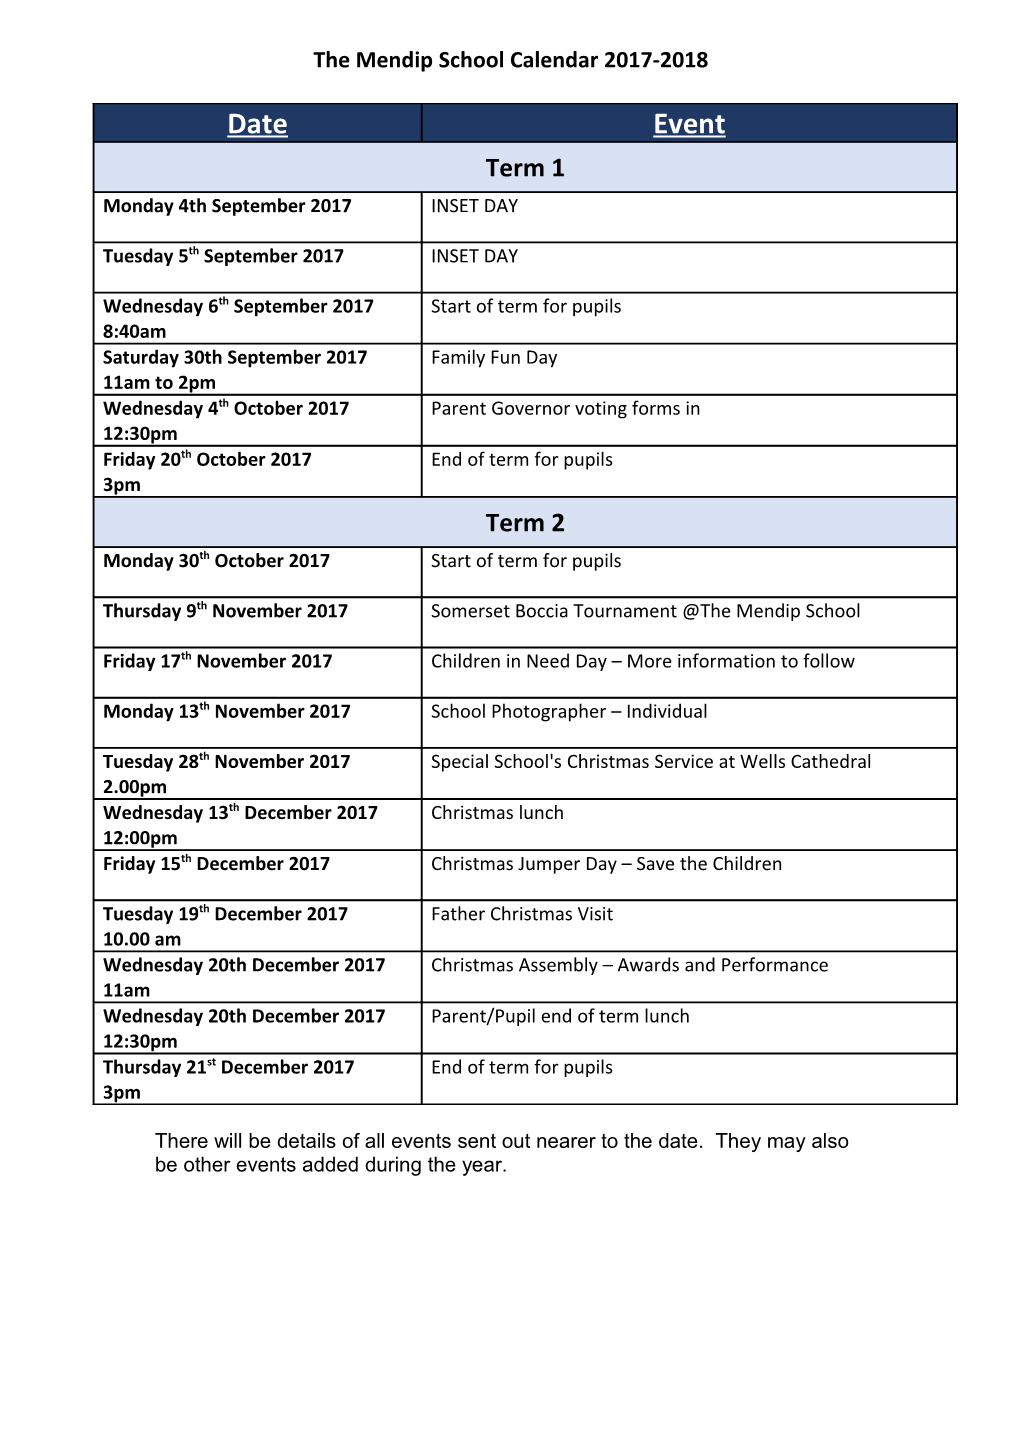 The Mendip School Calendar 2017-2018